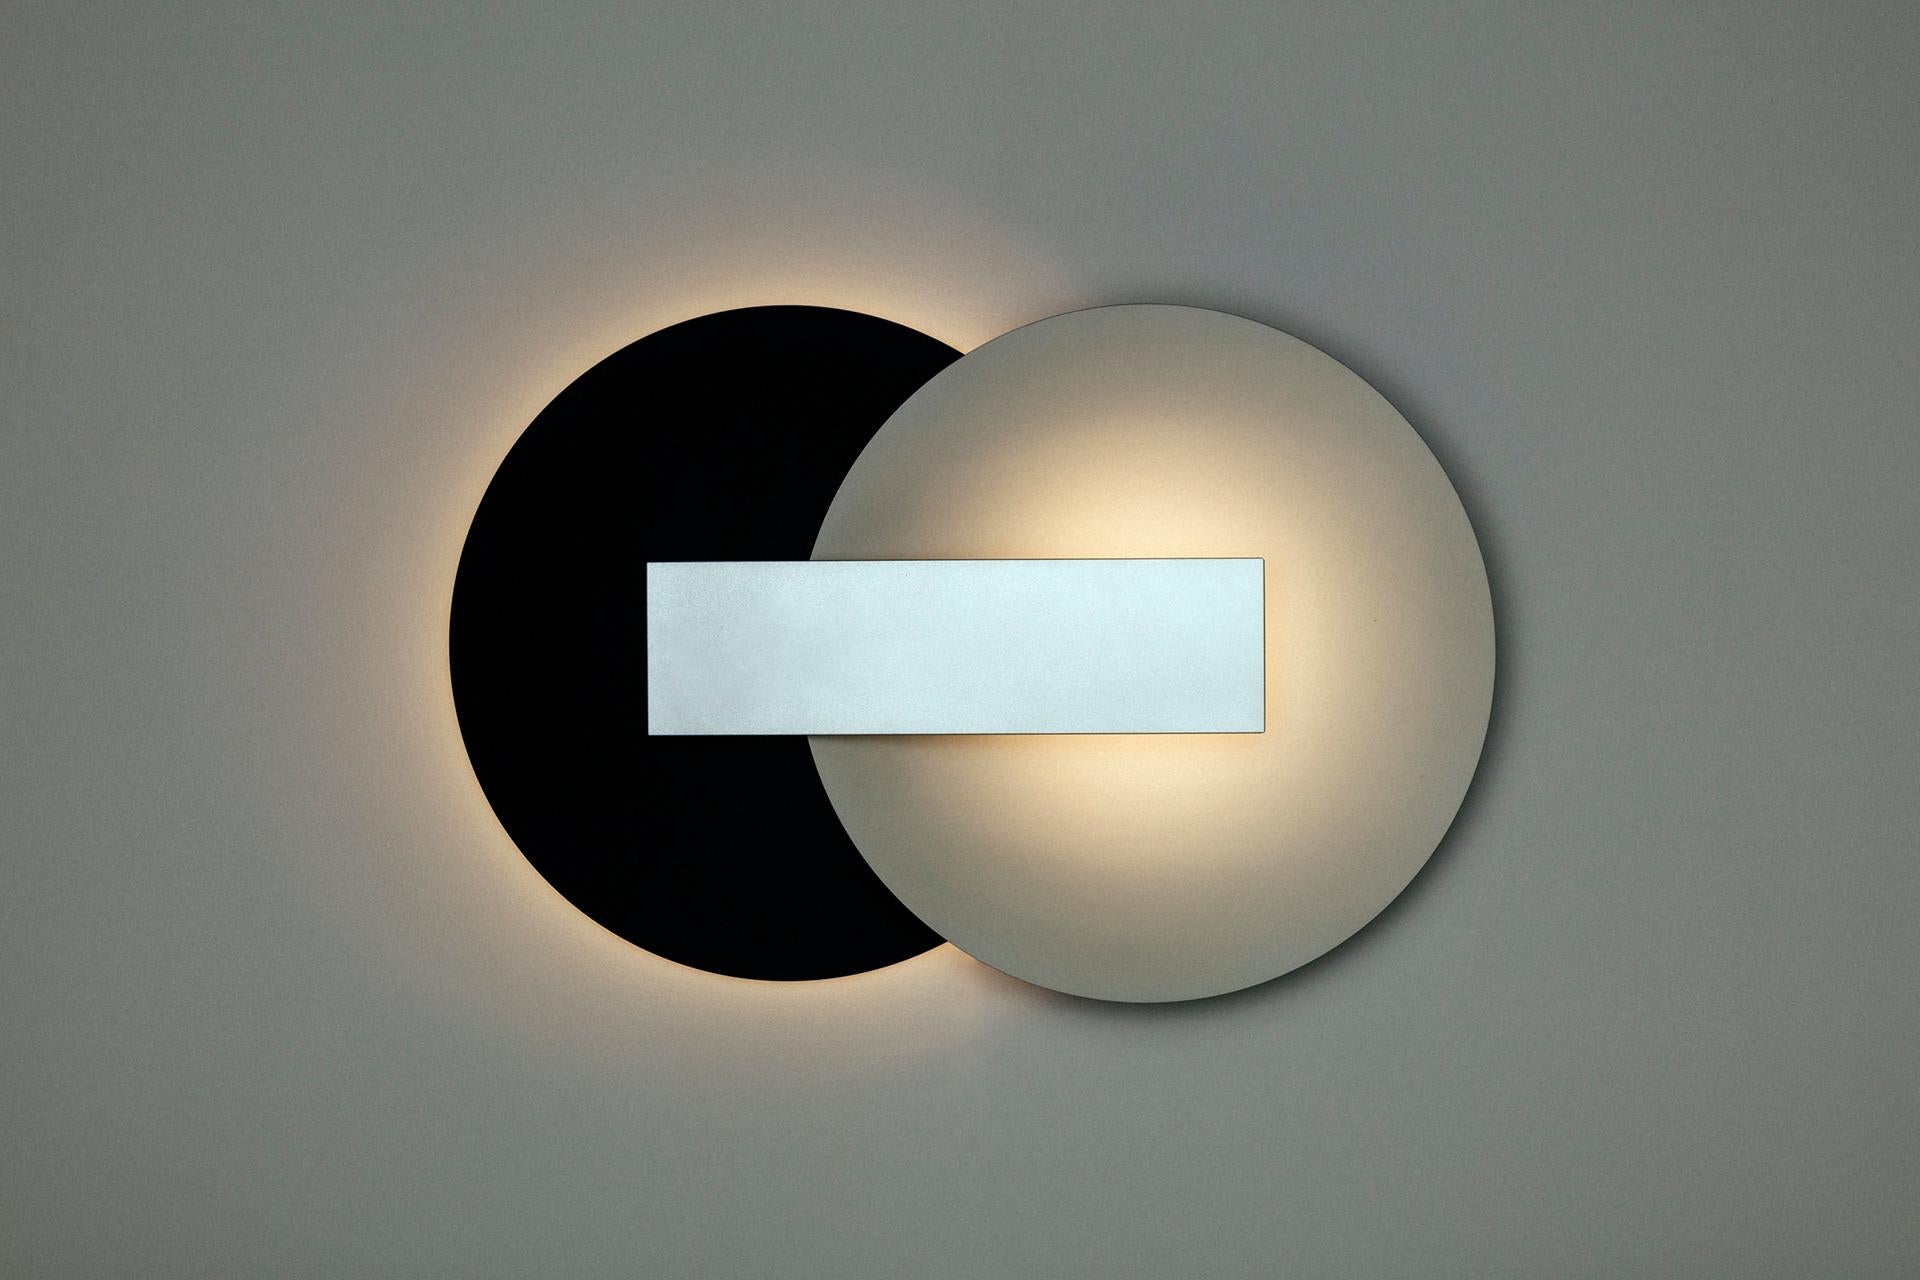 Orbe est une lampe murale à lumière indirecte, conçue pour fournir un éclairage doux à l'environnement.

La pièce a une structure simple, composée du minimum requis pour sa fonctionnalité : la boîte frontale abrite la source lumineuse et fournit